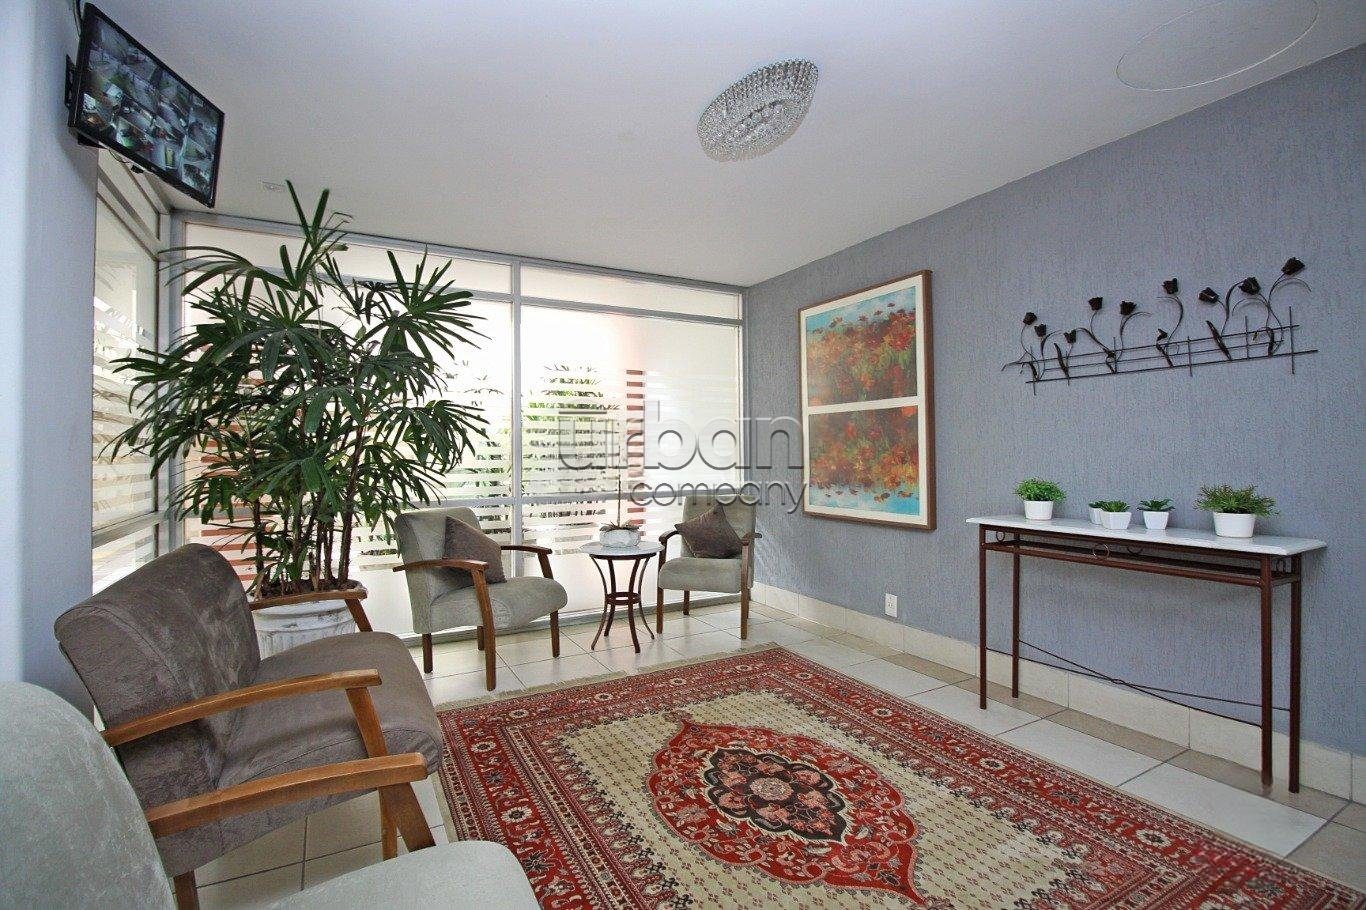 Apartamento com 80m², 2 quartos, 1 vaga, no bairro Mont Serrat em Porto Alegre